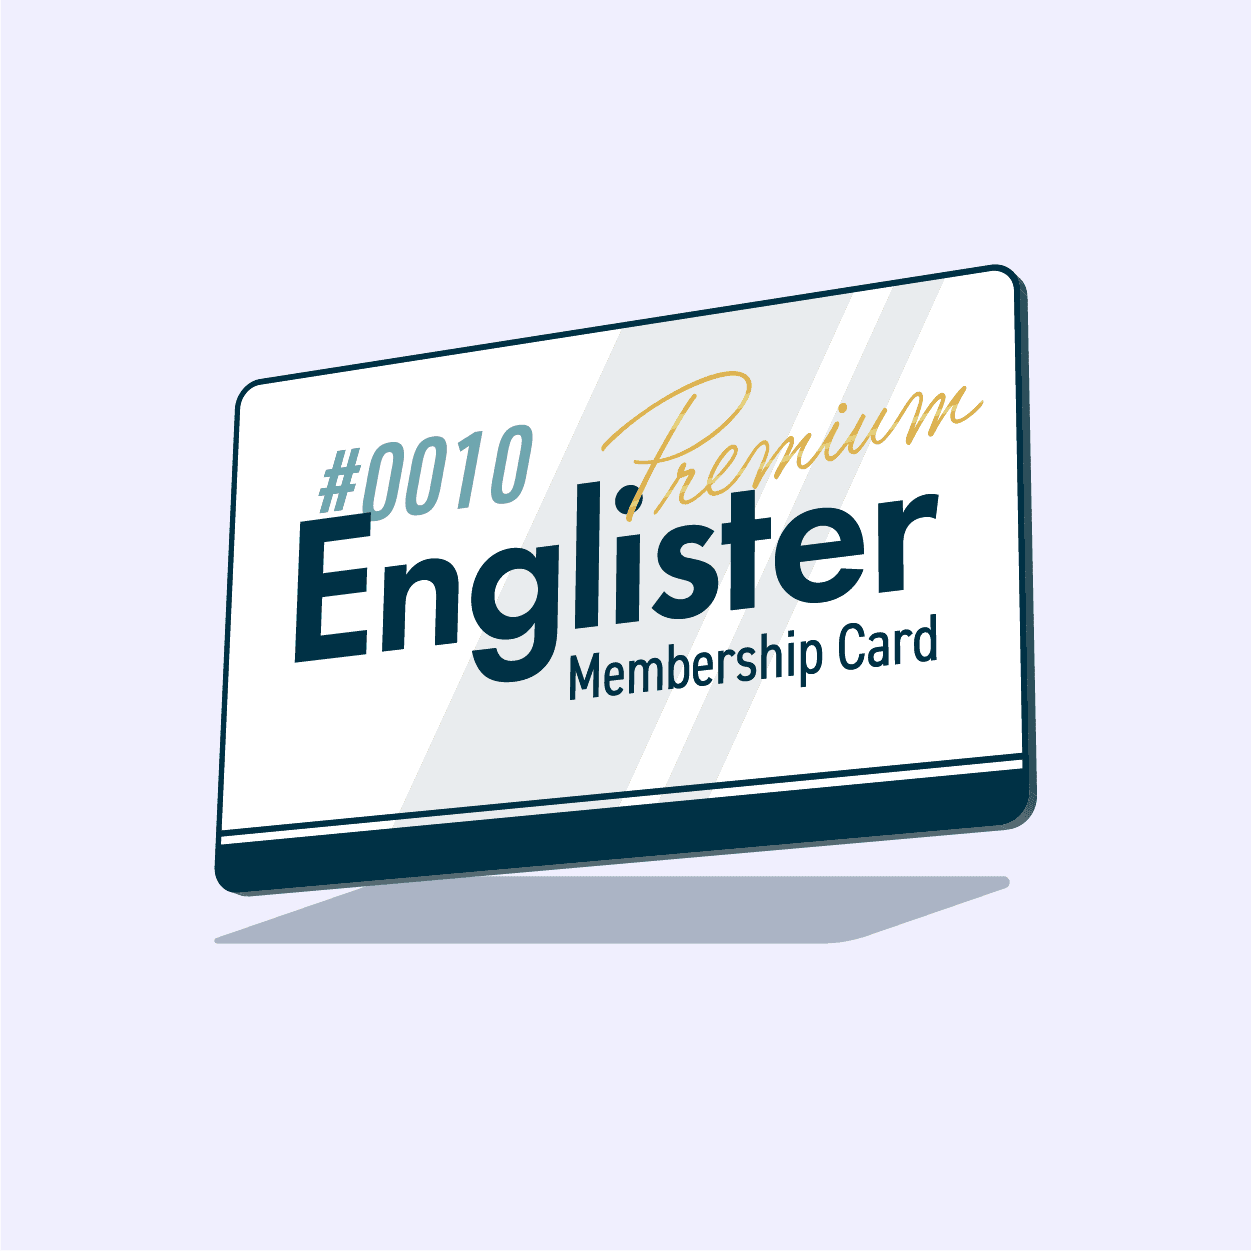 Englister Premium Membership #0010